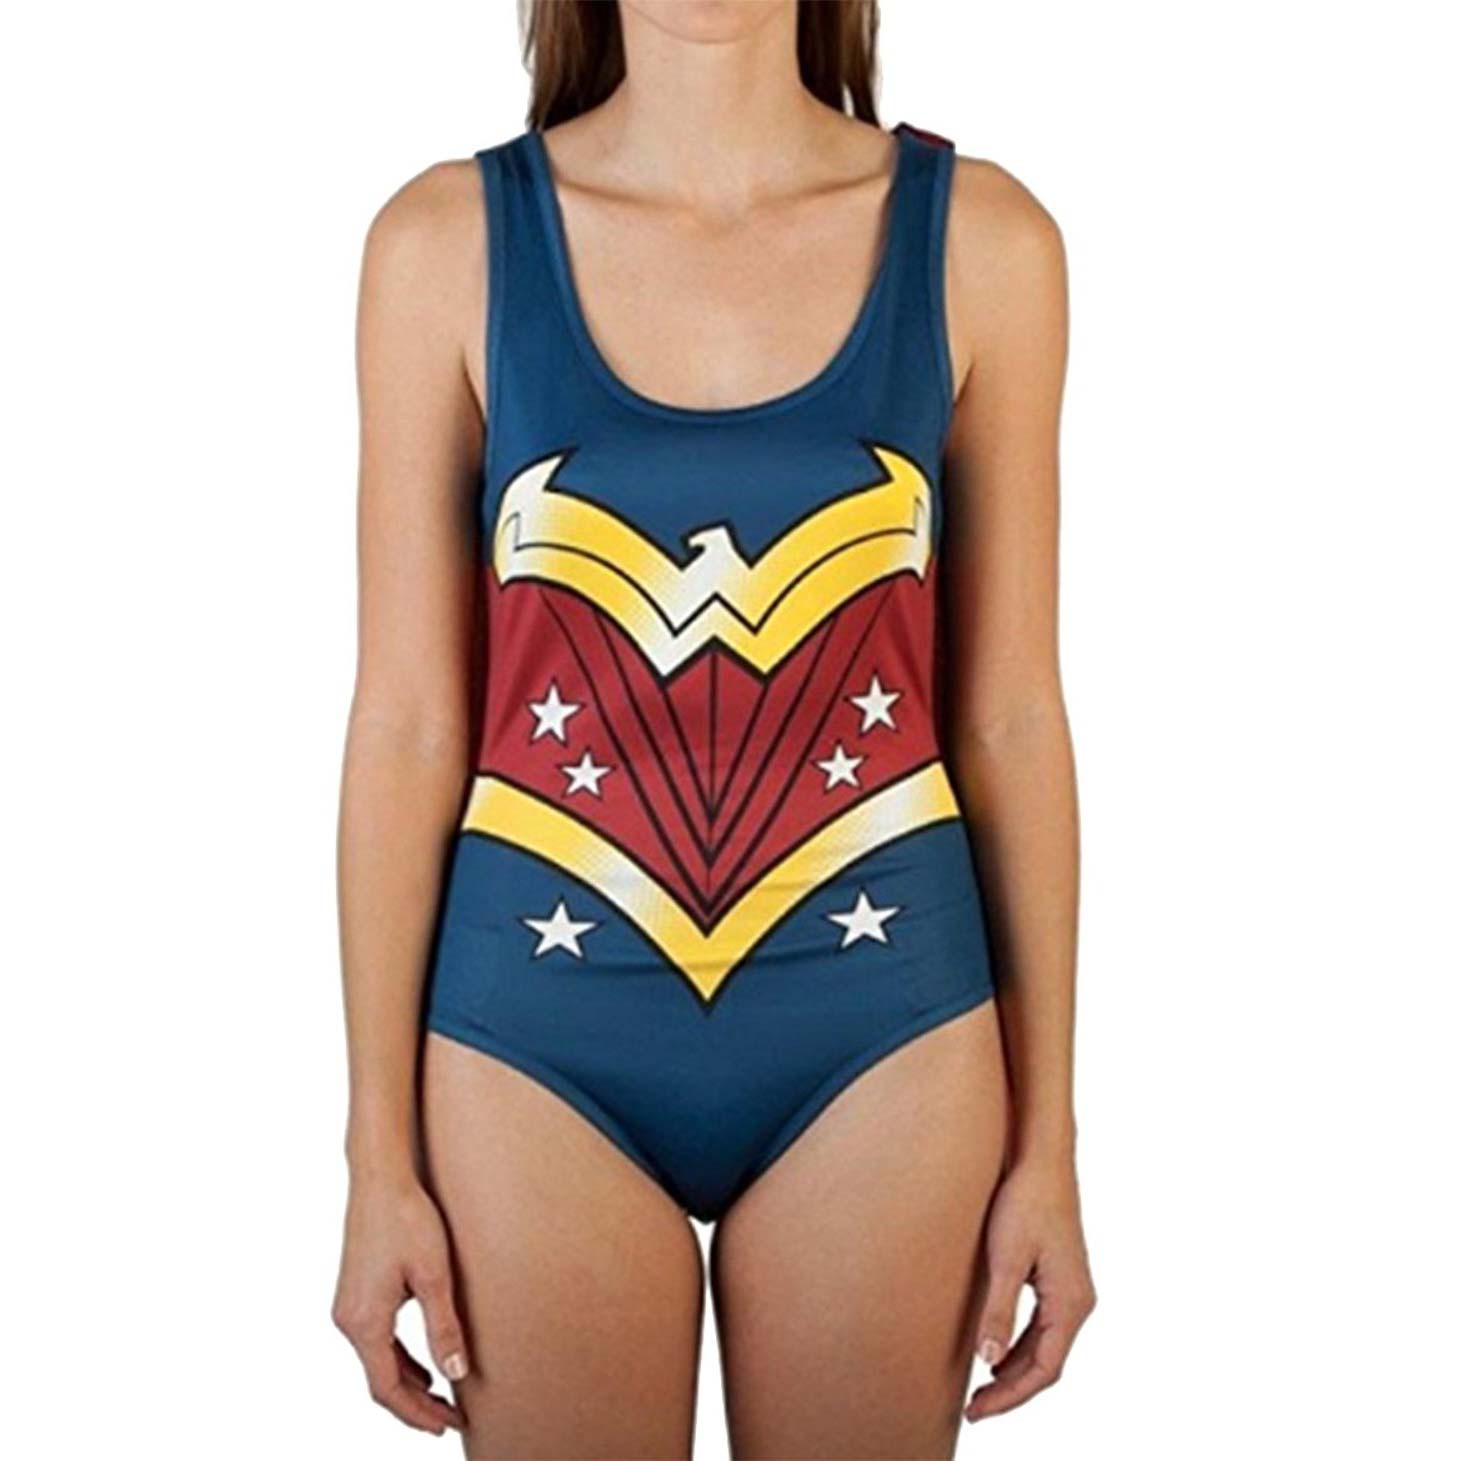 Wonder Woman Bodysuit With Cape